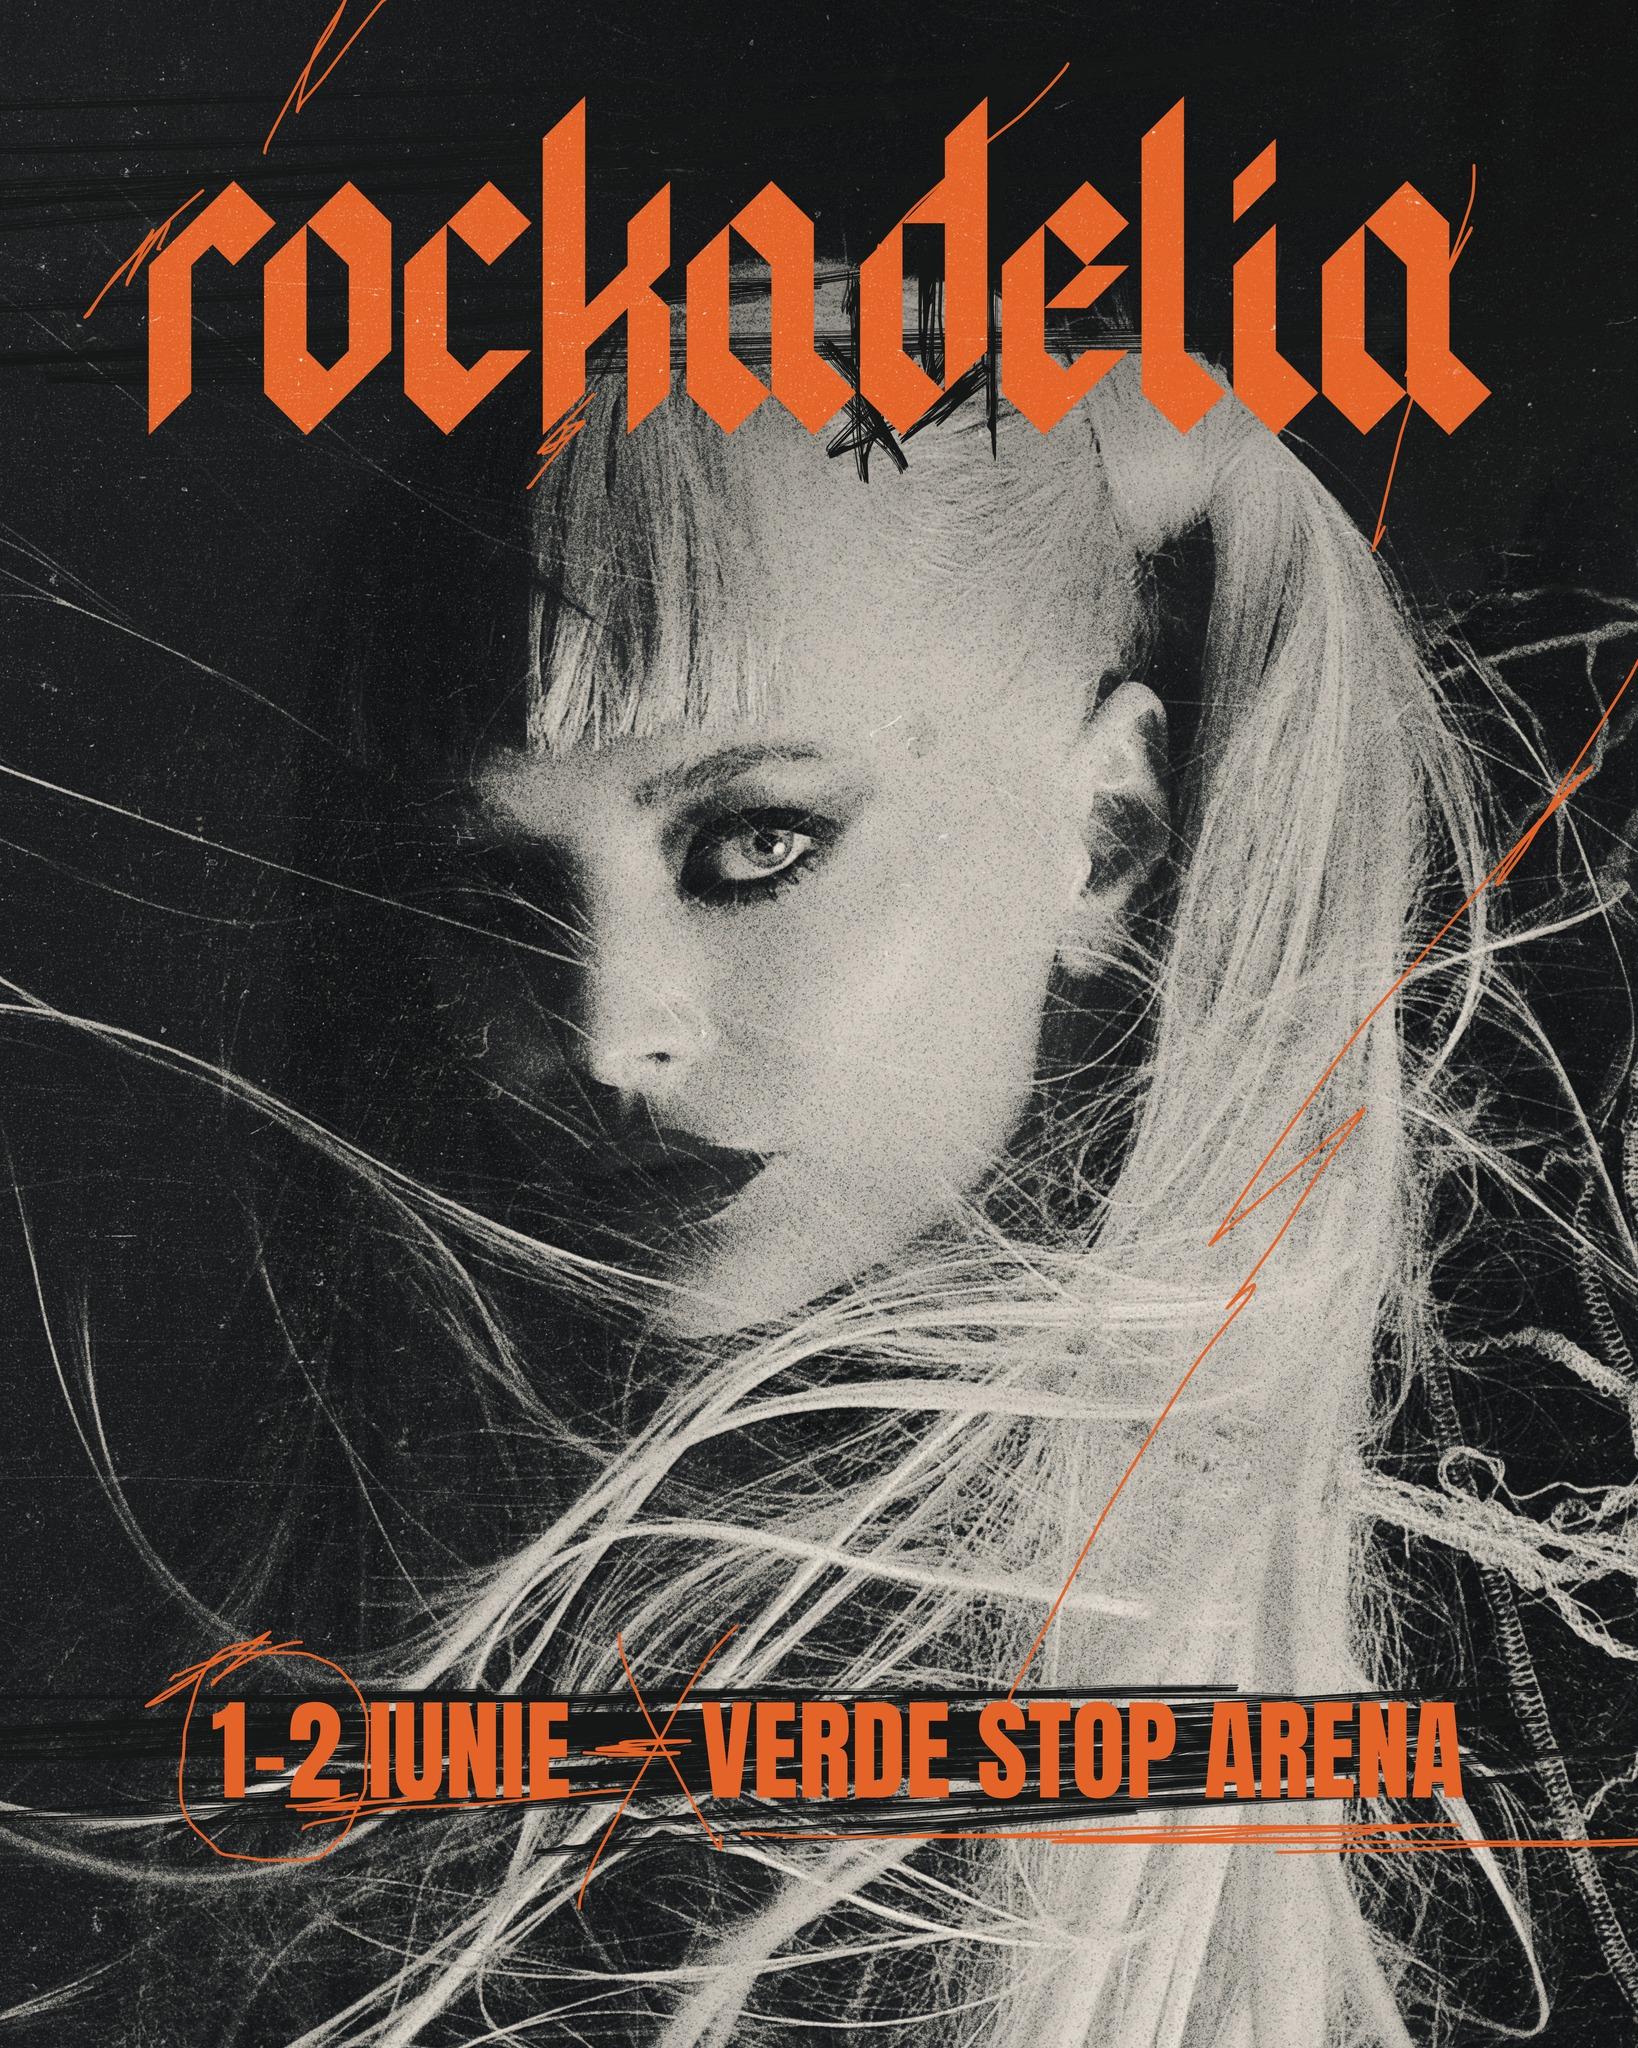 Delia prezintă super show-ul "Rockadelia" pe 1 și 2 iunie la Verde Stop Arena în București